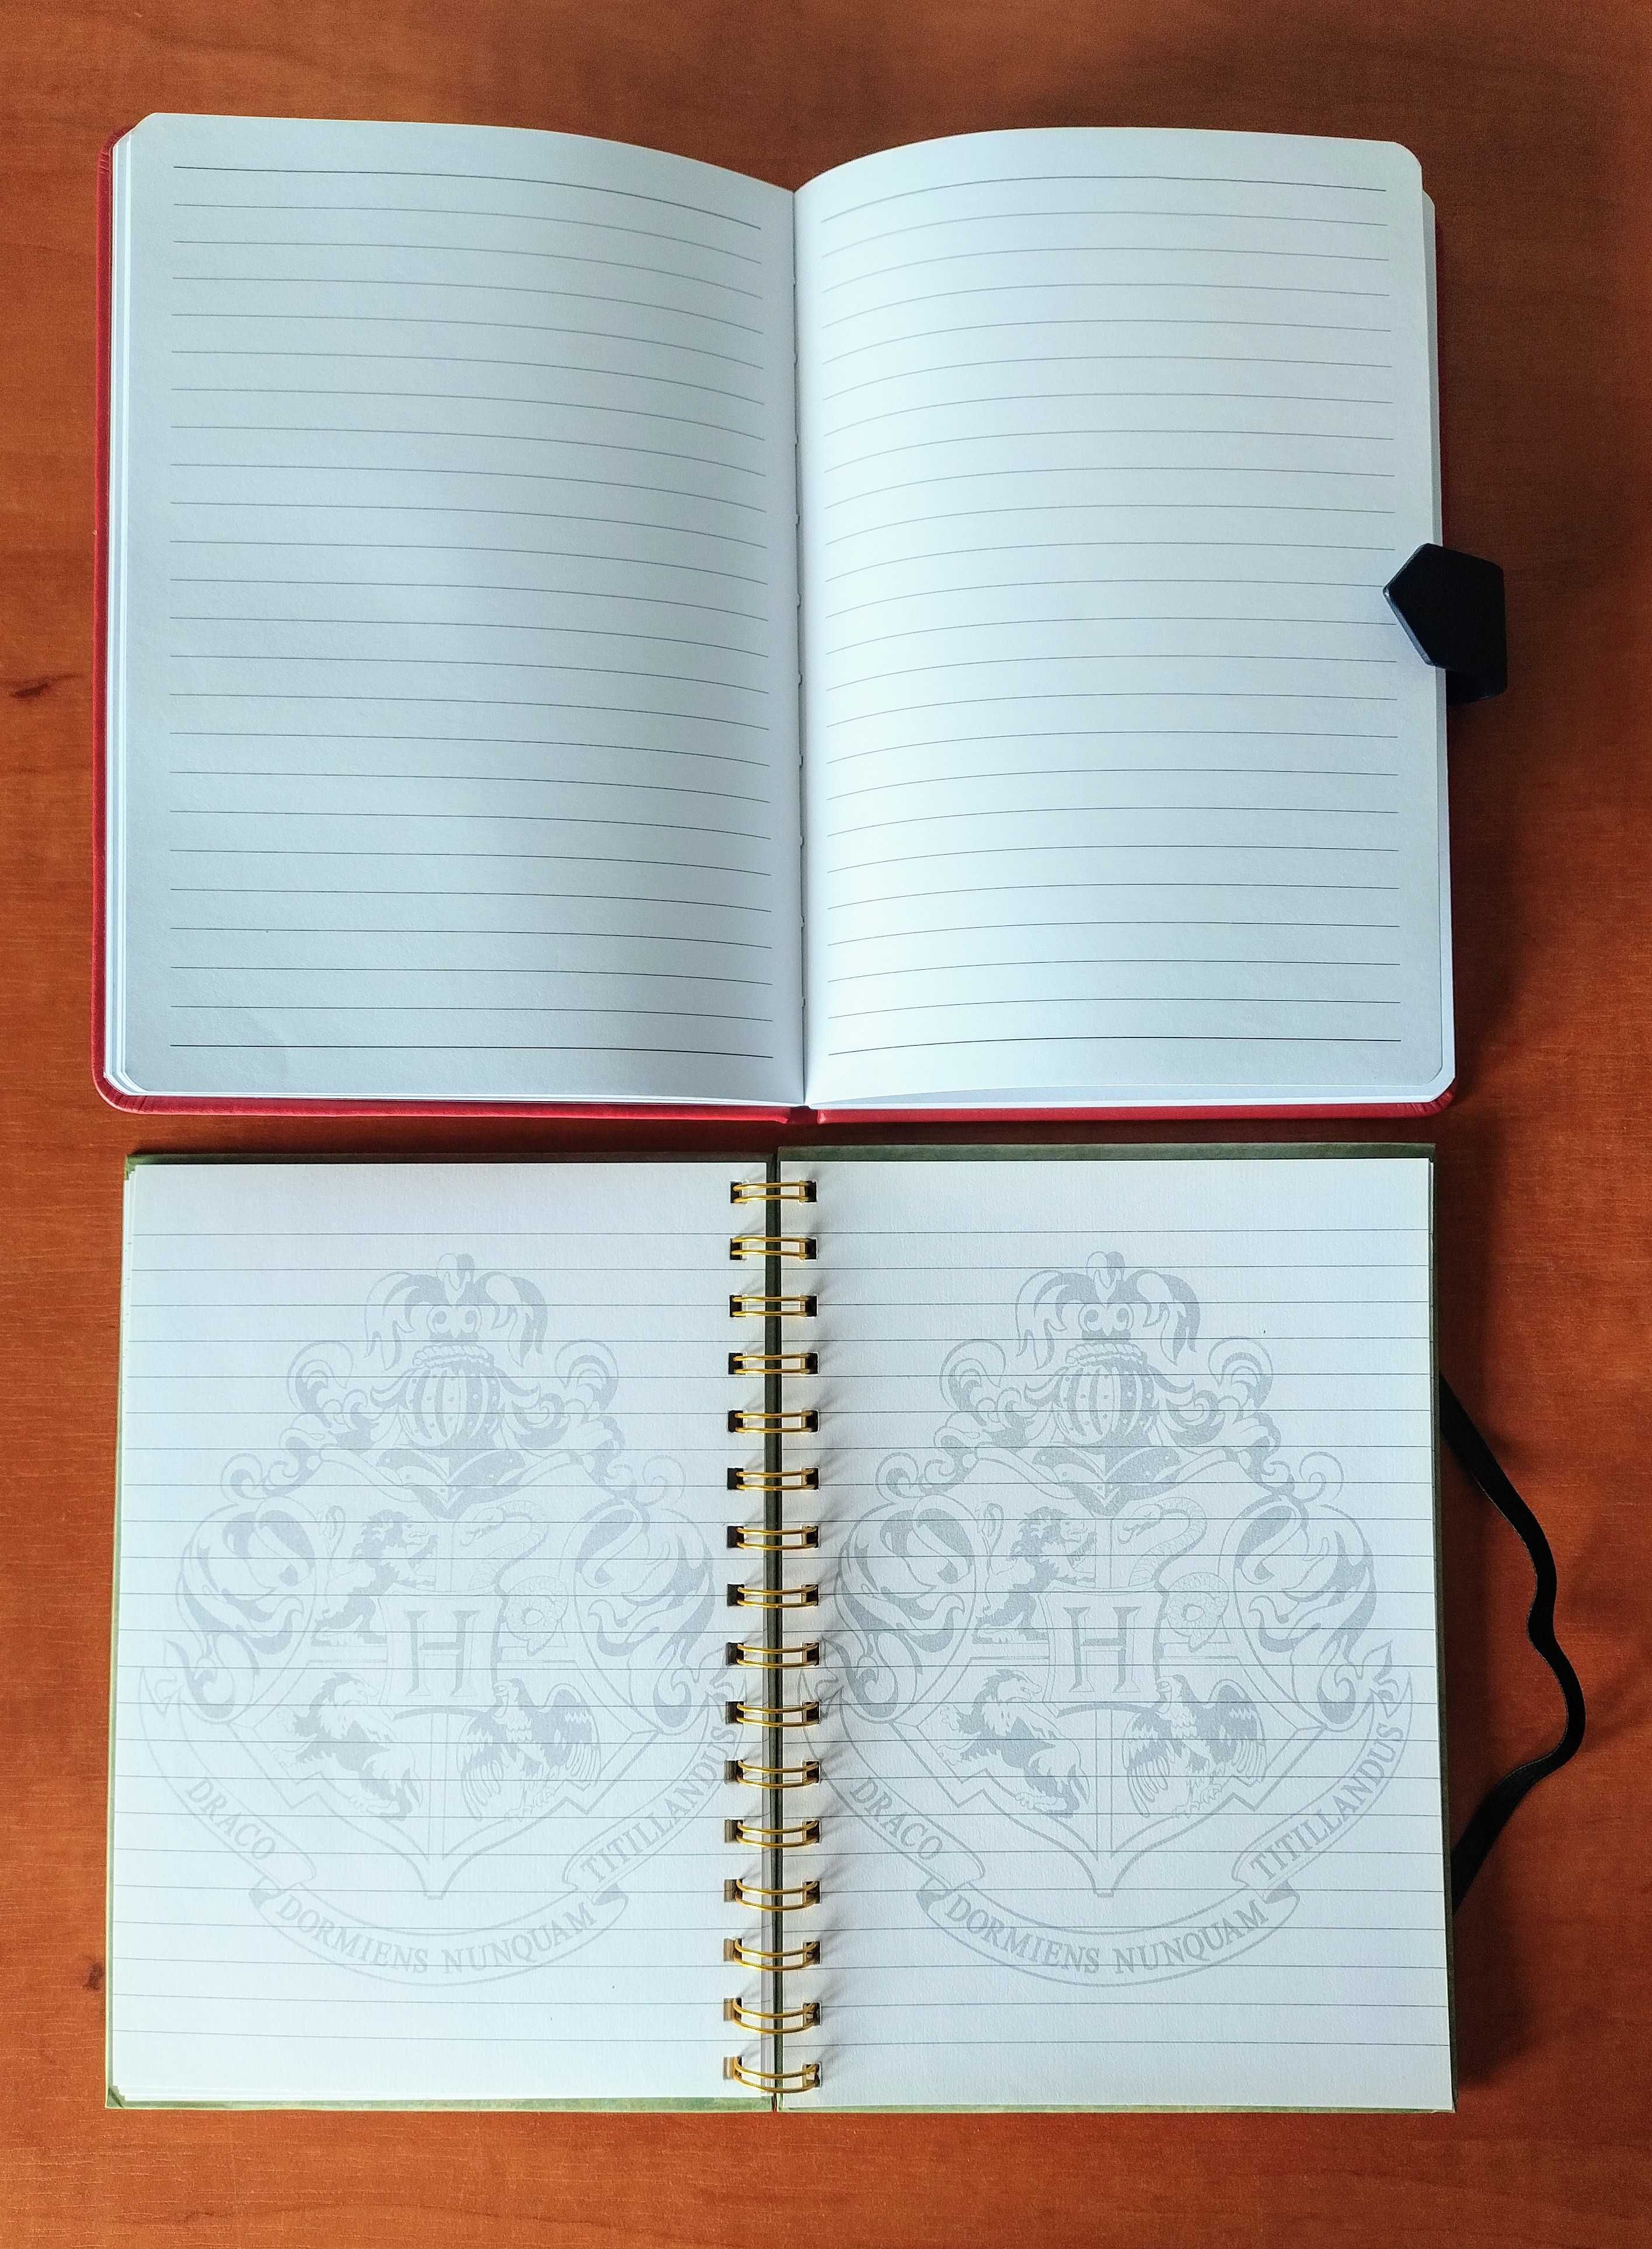 Harry Potter zeszyt kołonotatnik skorowidz notes notatnik dziennik x2